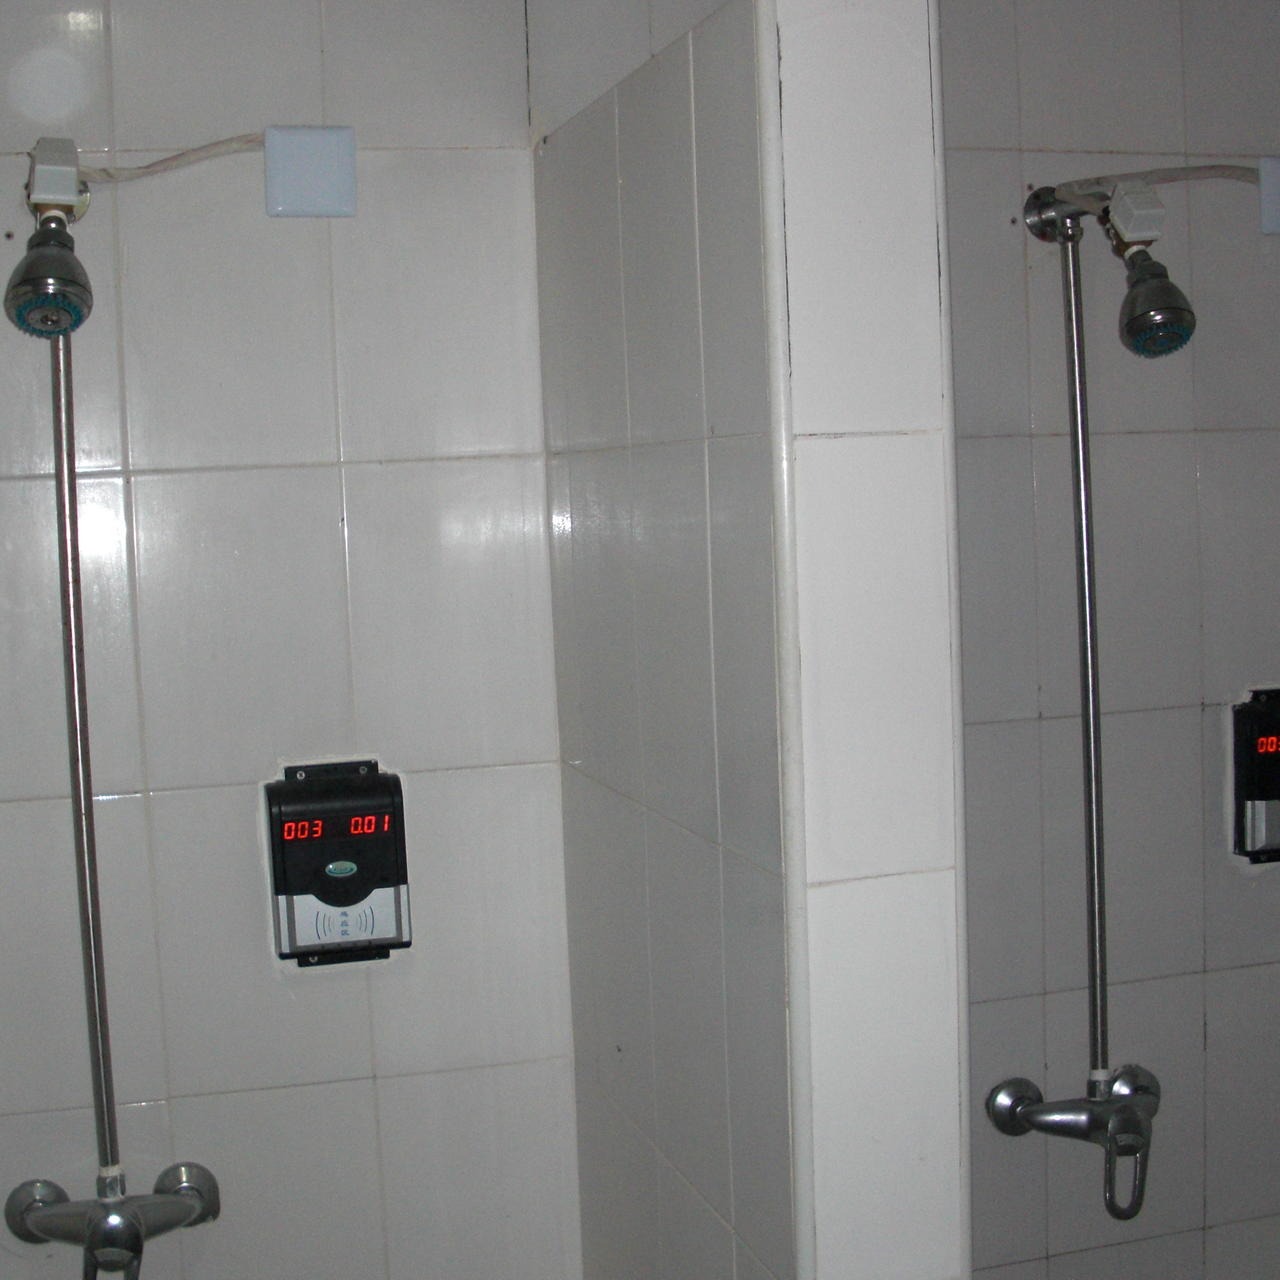 兴天下HF-660 IC卡控水器,插卡水控器,IC卡淋浴水控器